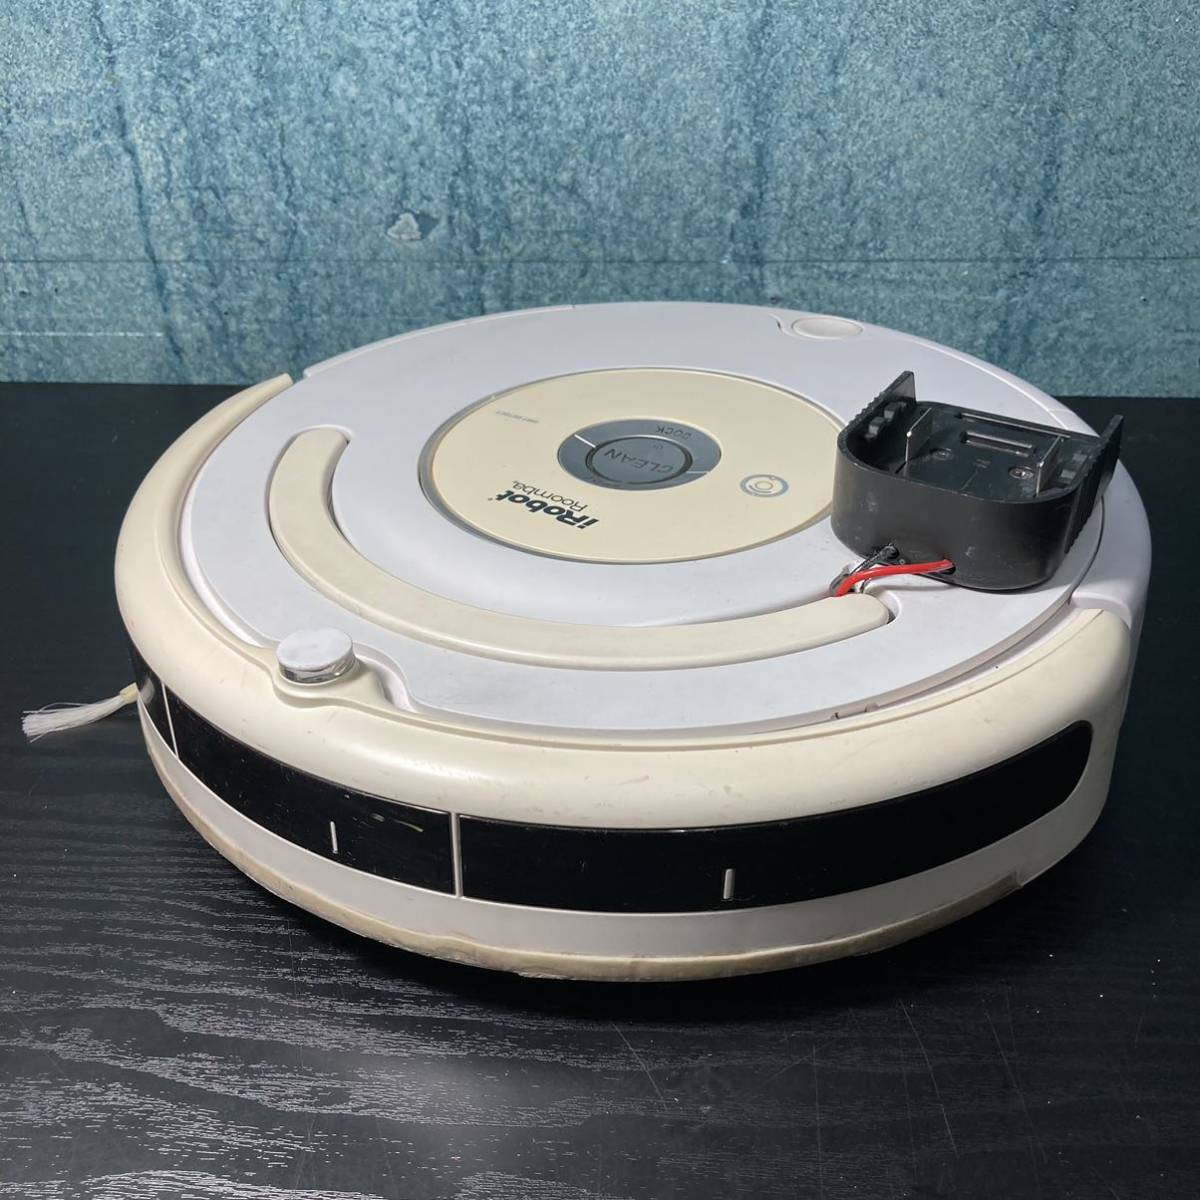 マキタバッテリーで動くRoomba iRobot Roomba ロボット掃除機 自動掃除